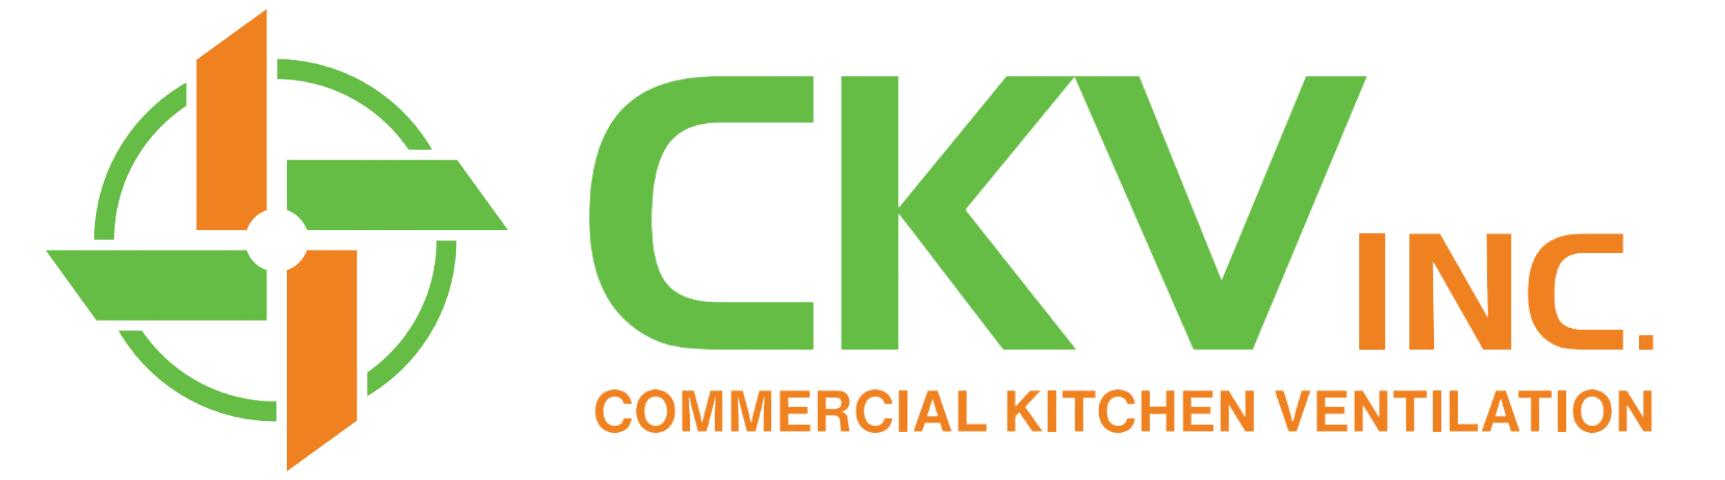 Commercial Kitchen Ventilation Inc.